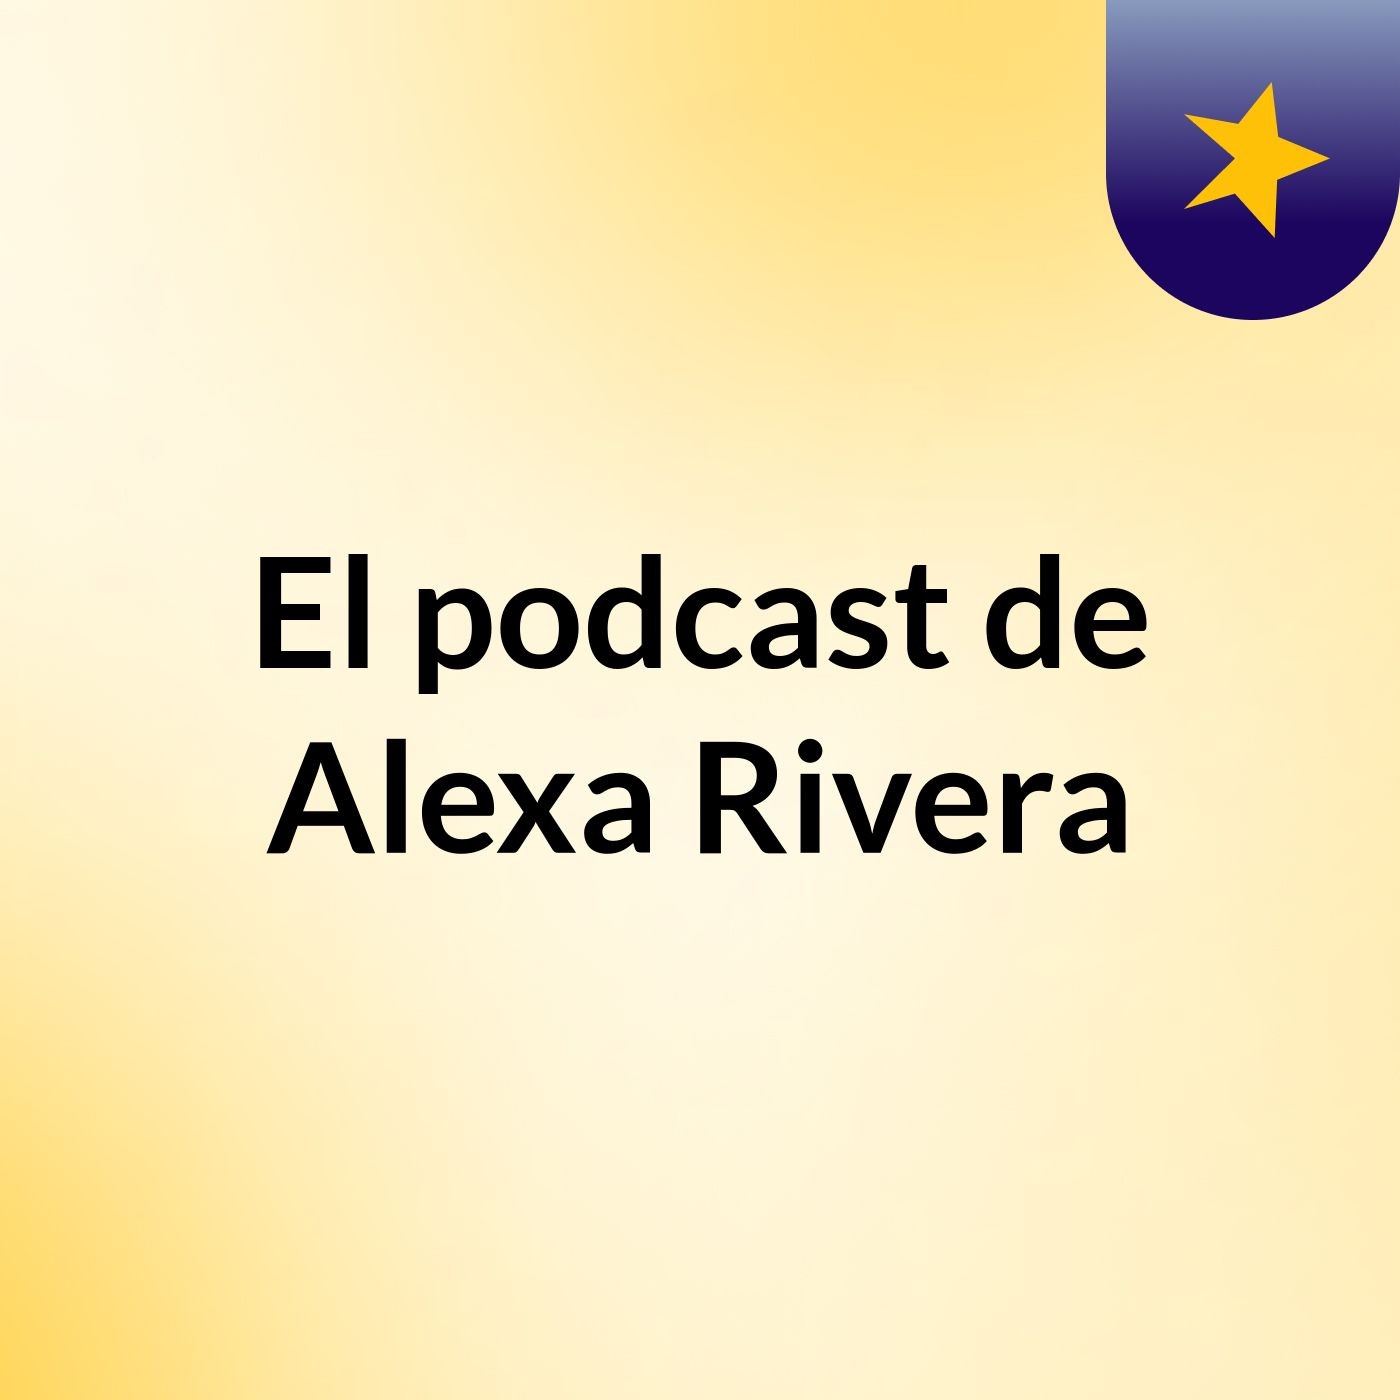 El podcast de Alexa Rivera